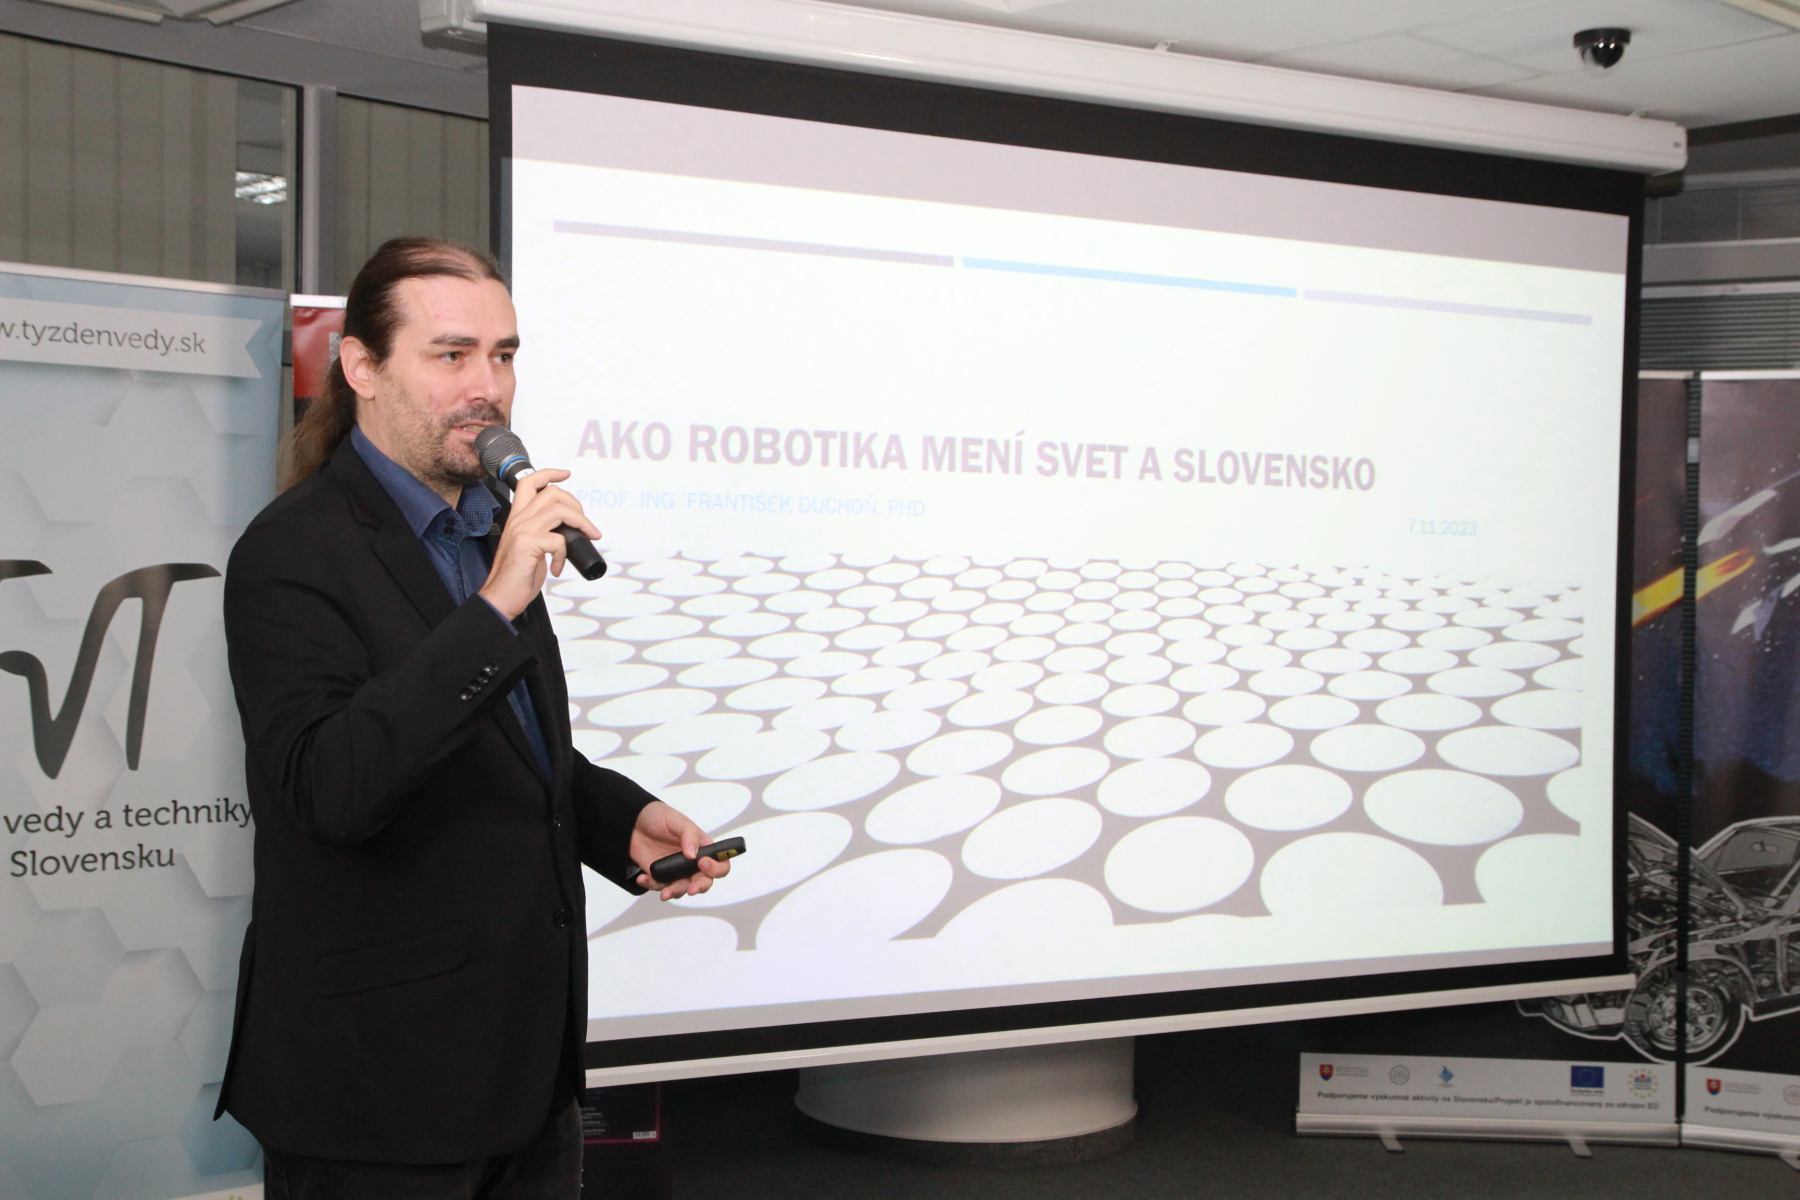 Ako robotika mení svet a Slovensko – Prof. Ing. František Duchoň, PhD.